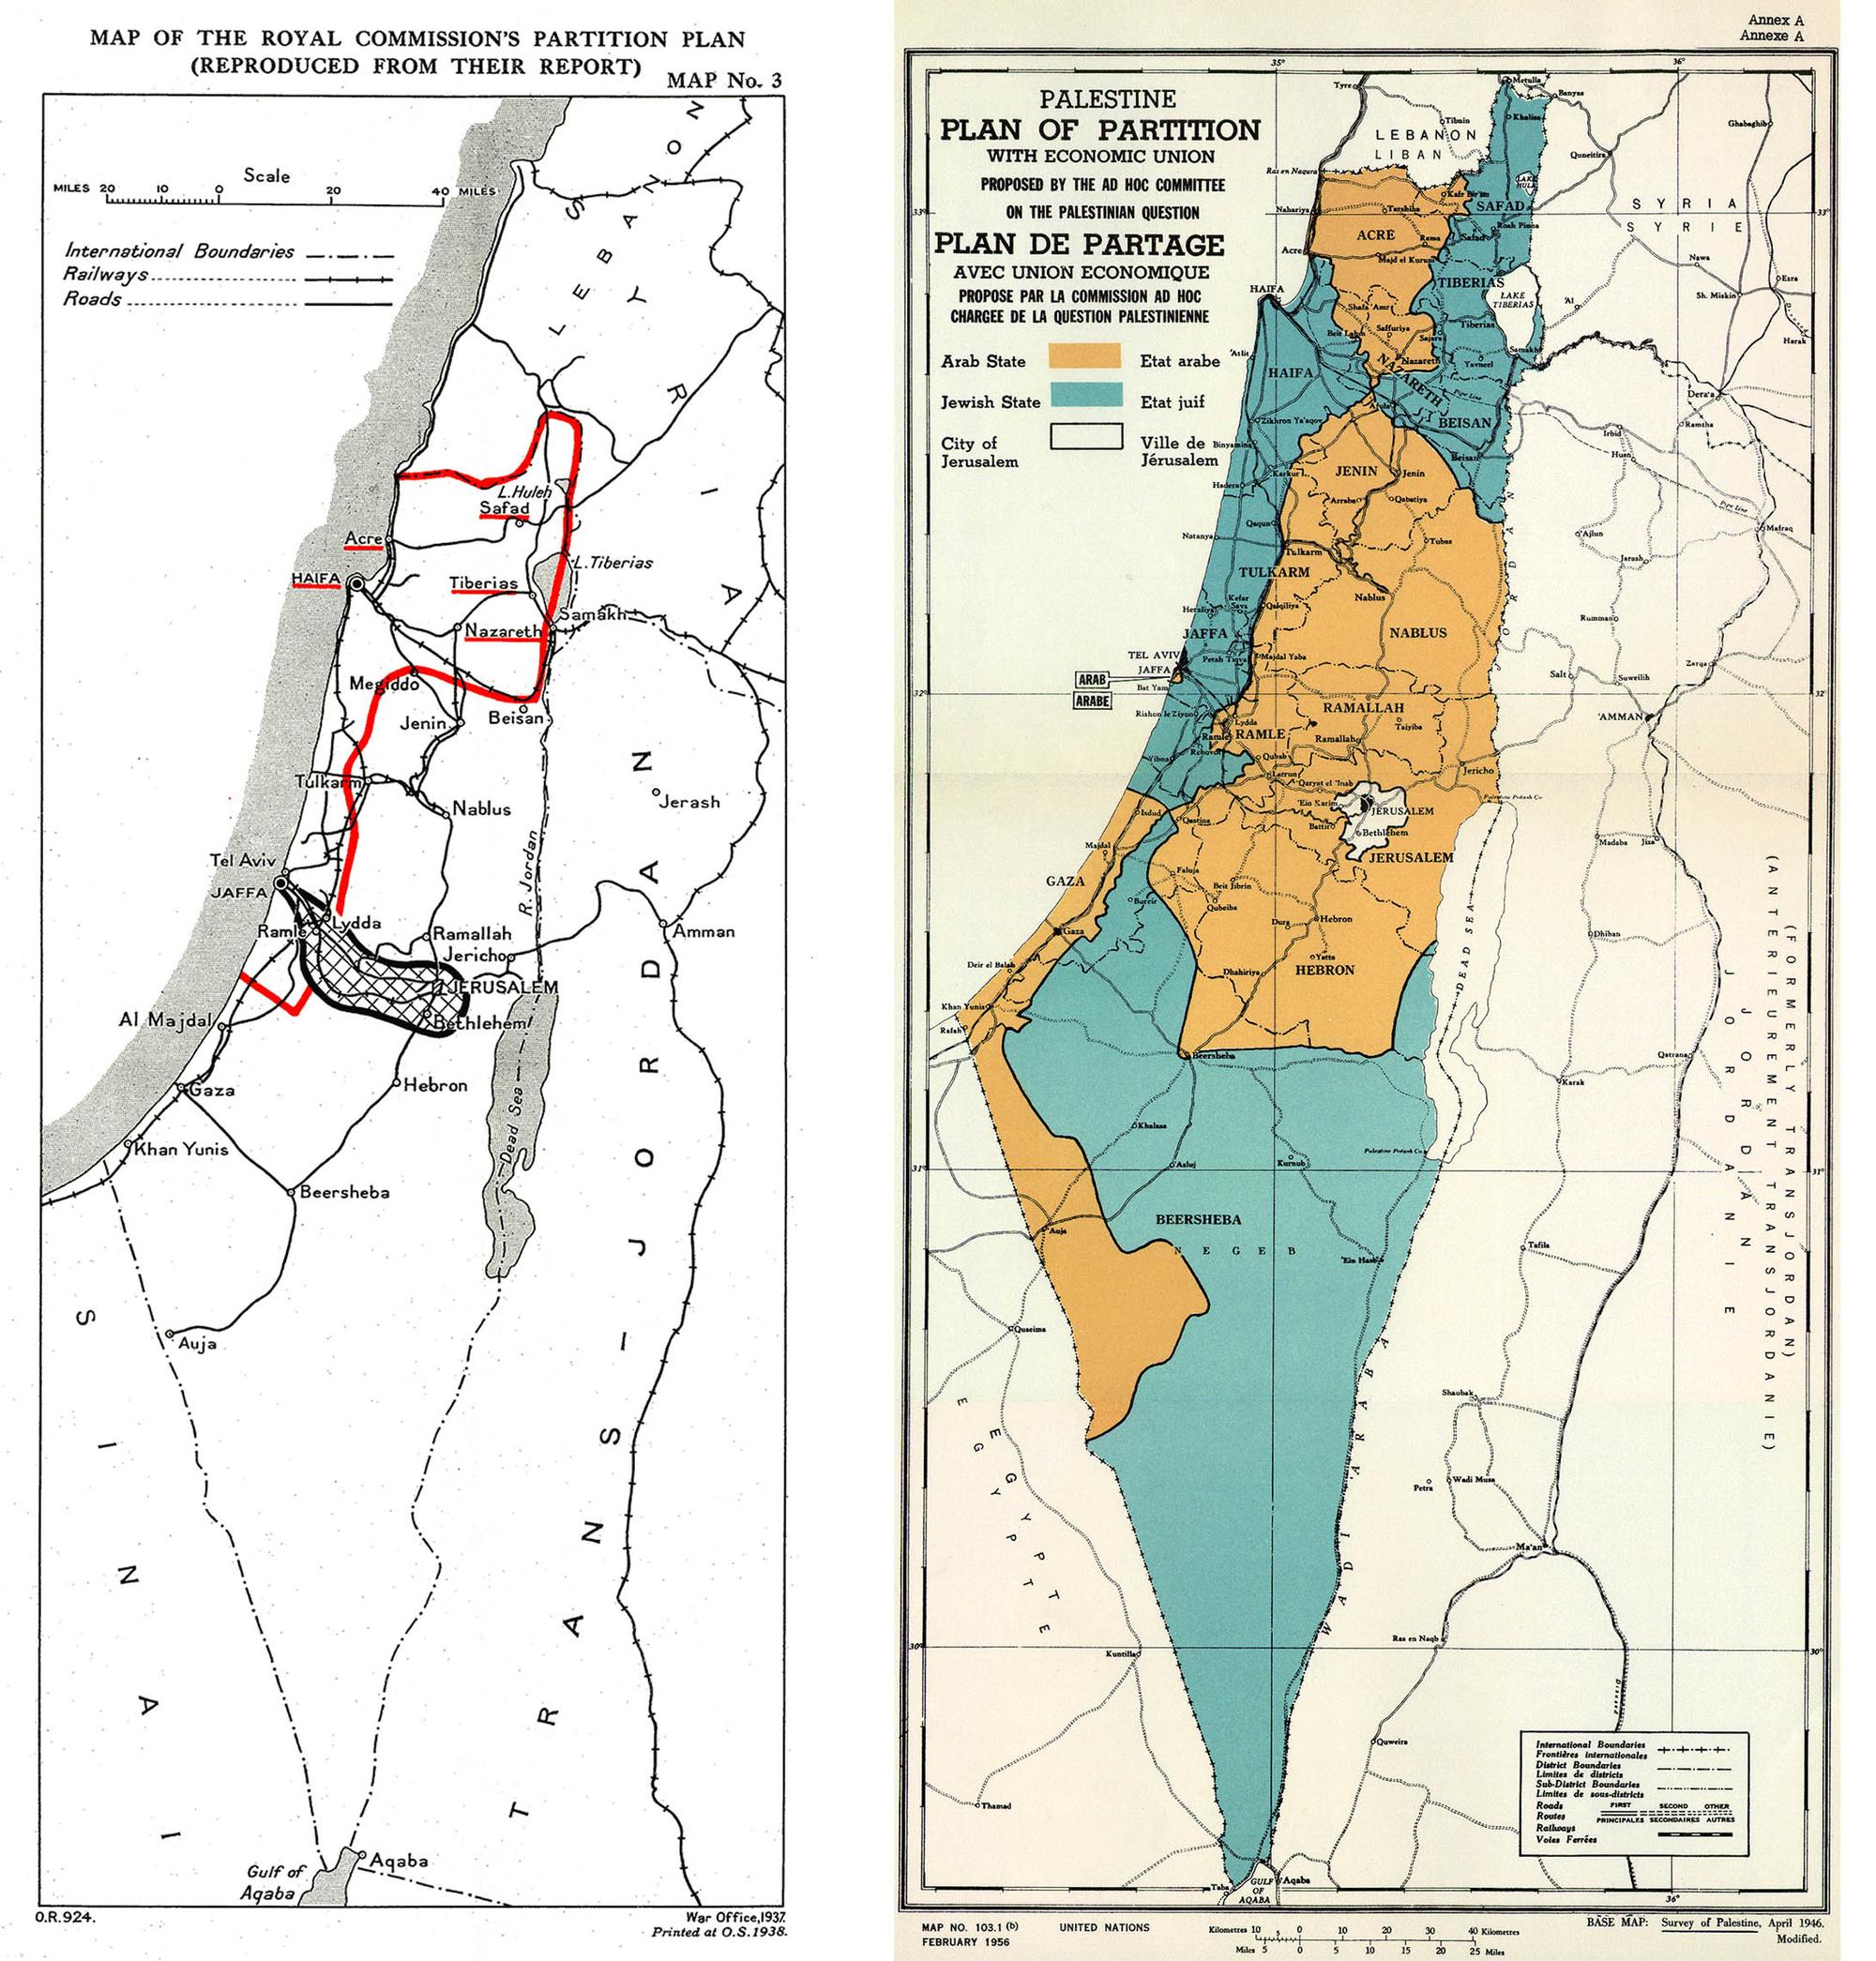 Israel un Estado construido sobre Sheikh Jarrah 3